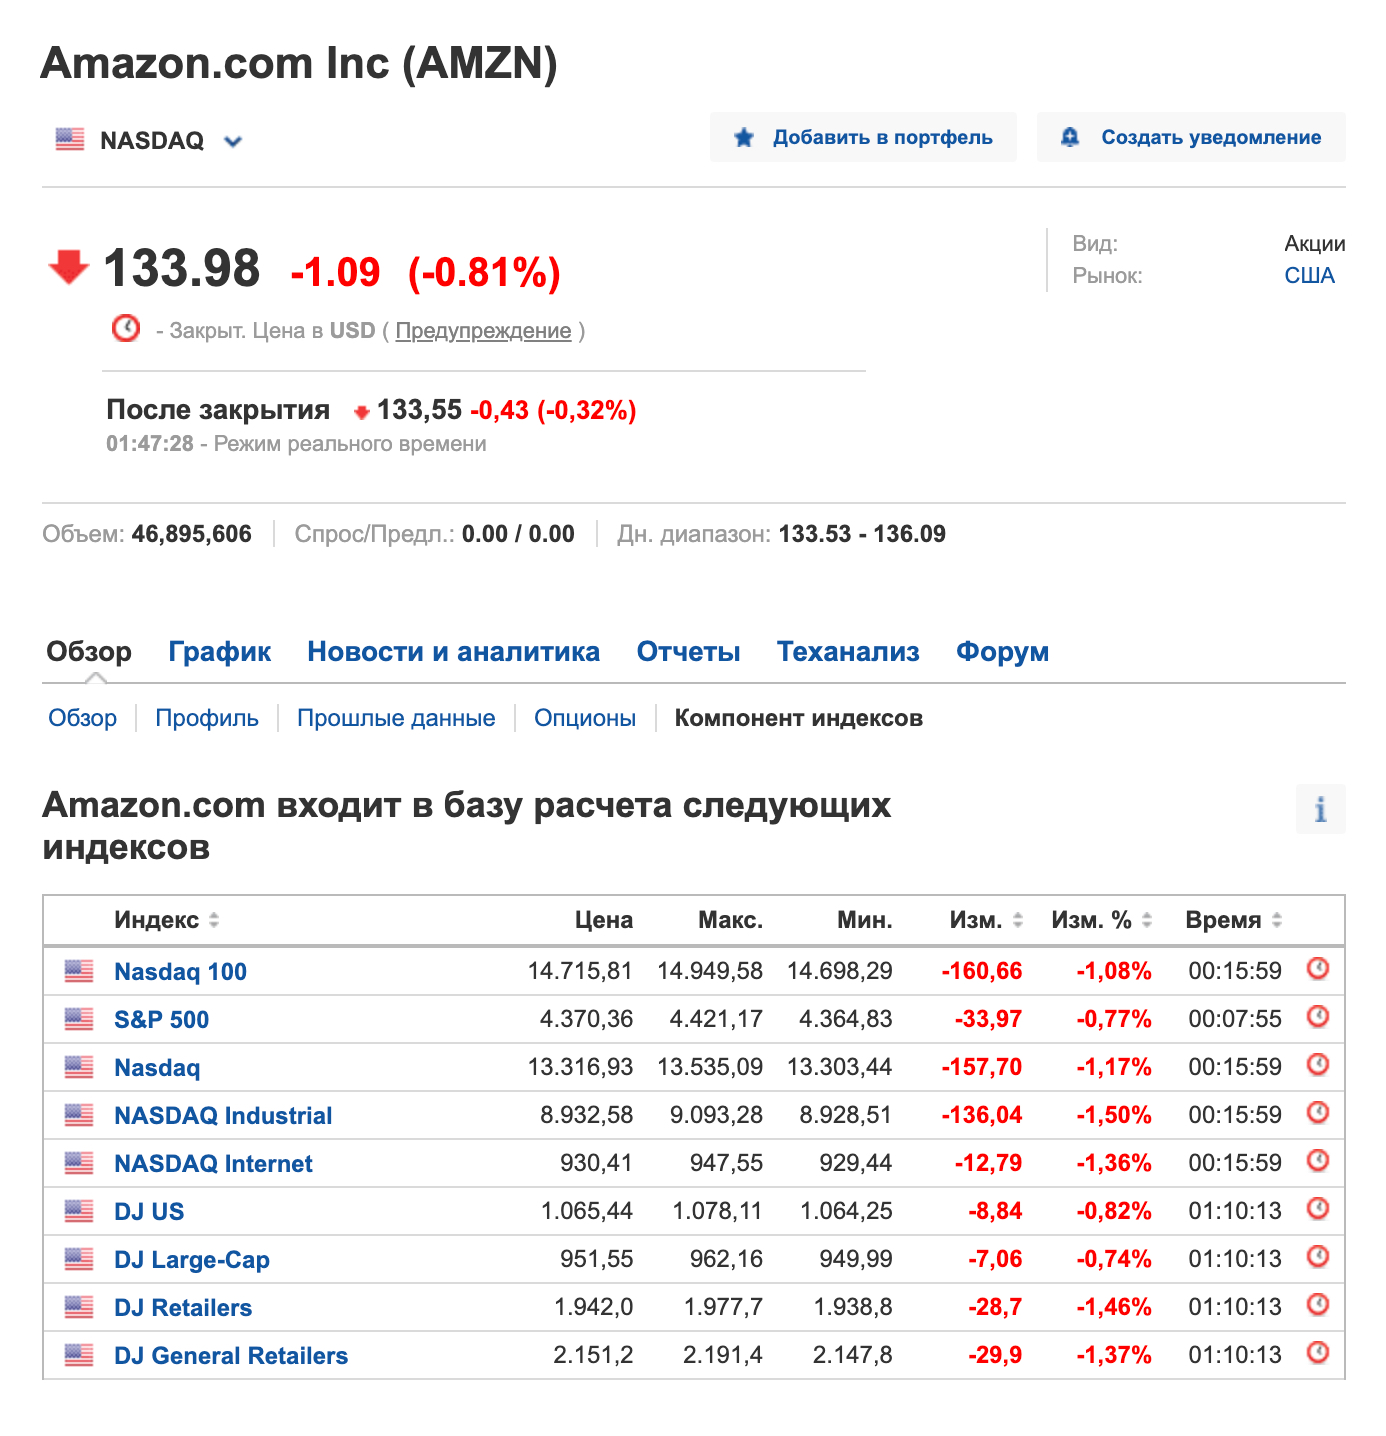 Список различных индексов, в которые включена компания Amazon